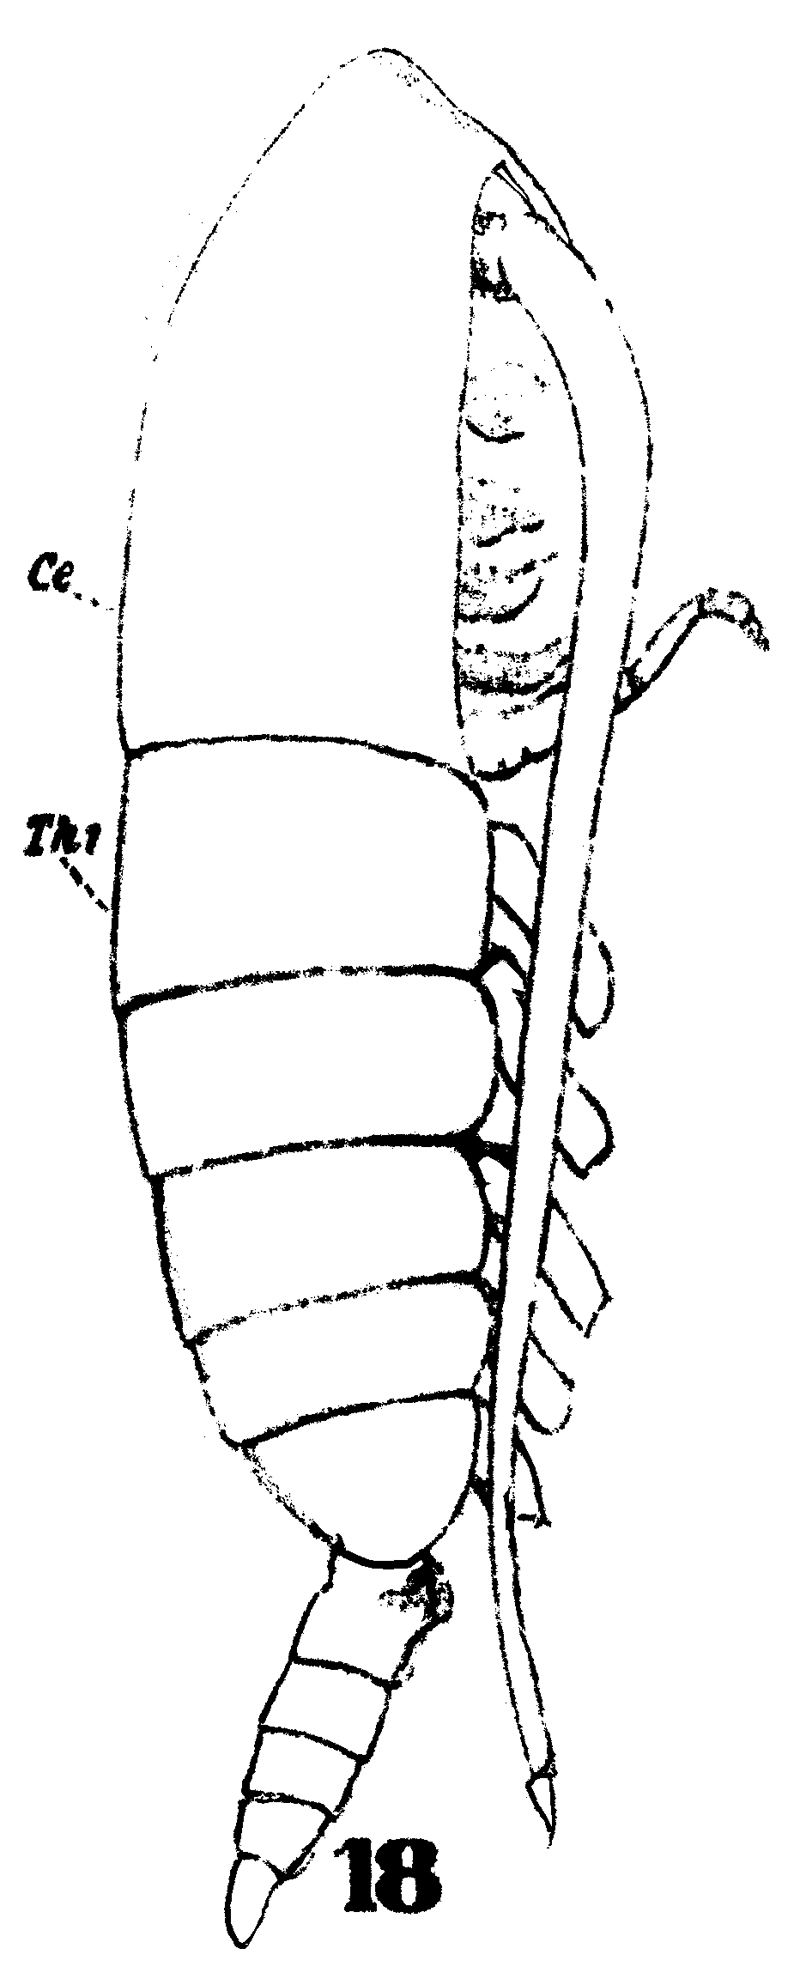 Espce Calanoides carinatus - Planche 19 de figures morphologiques